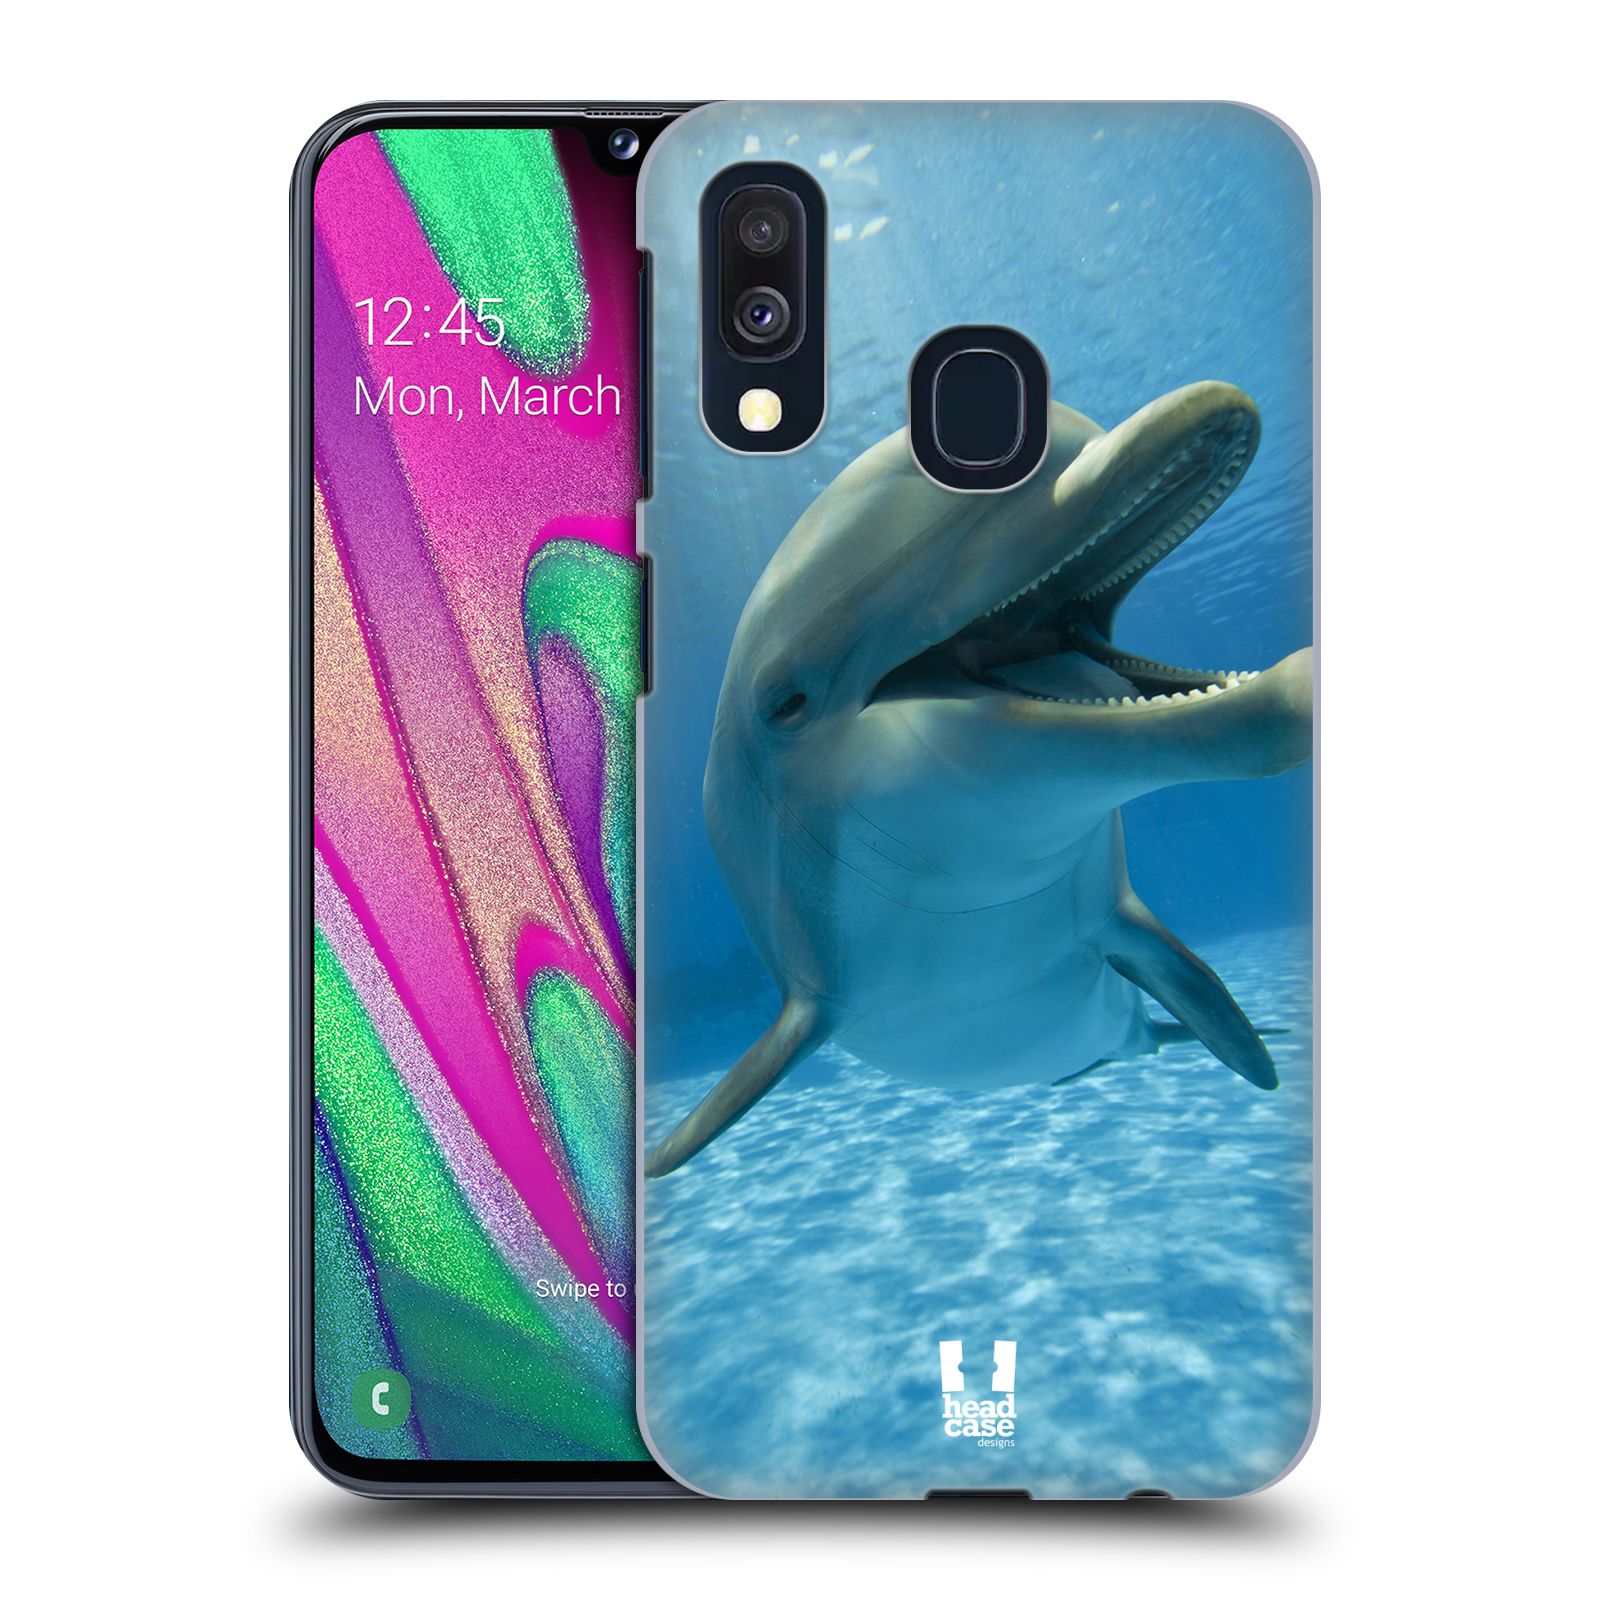 Zadní obal pro mobil Samsung Galaxy A40 - HEAD CASE - Svět zvířat delfín v moři